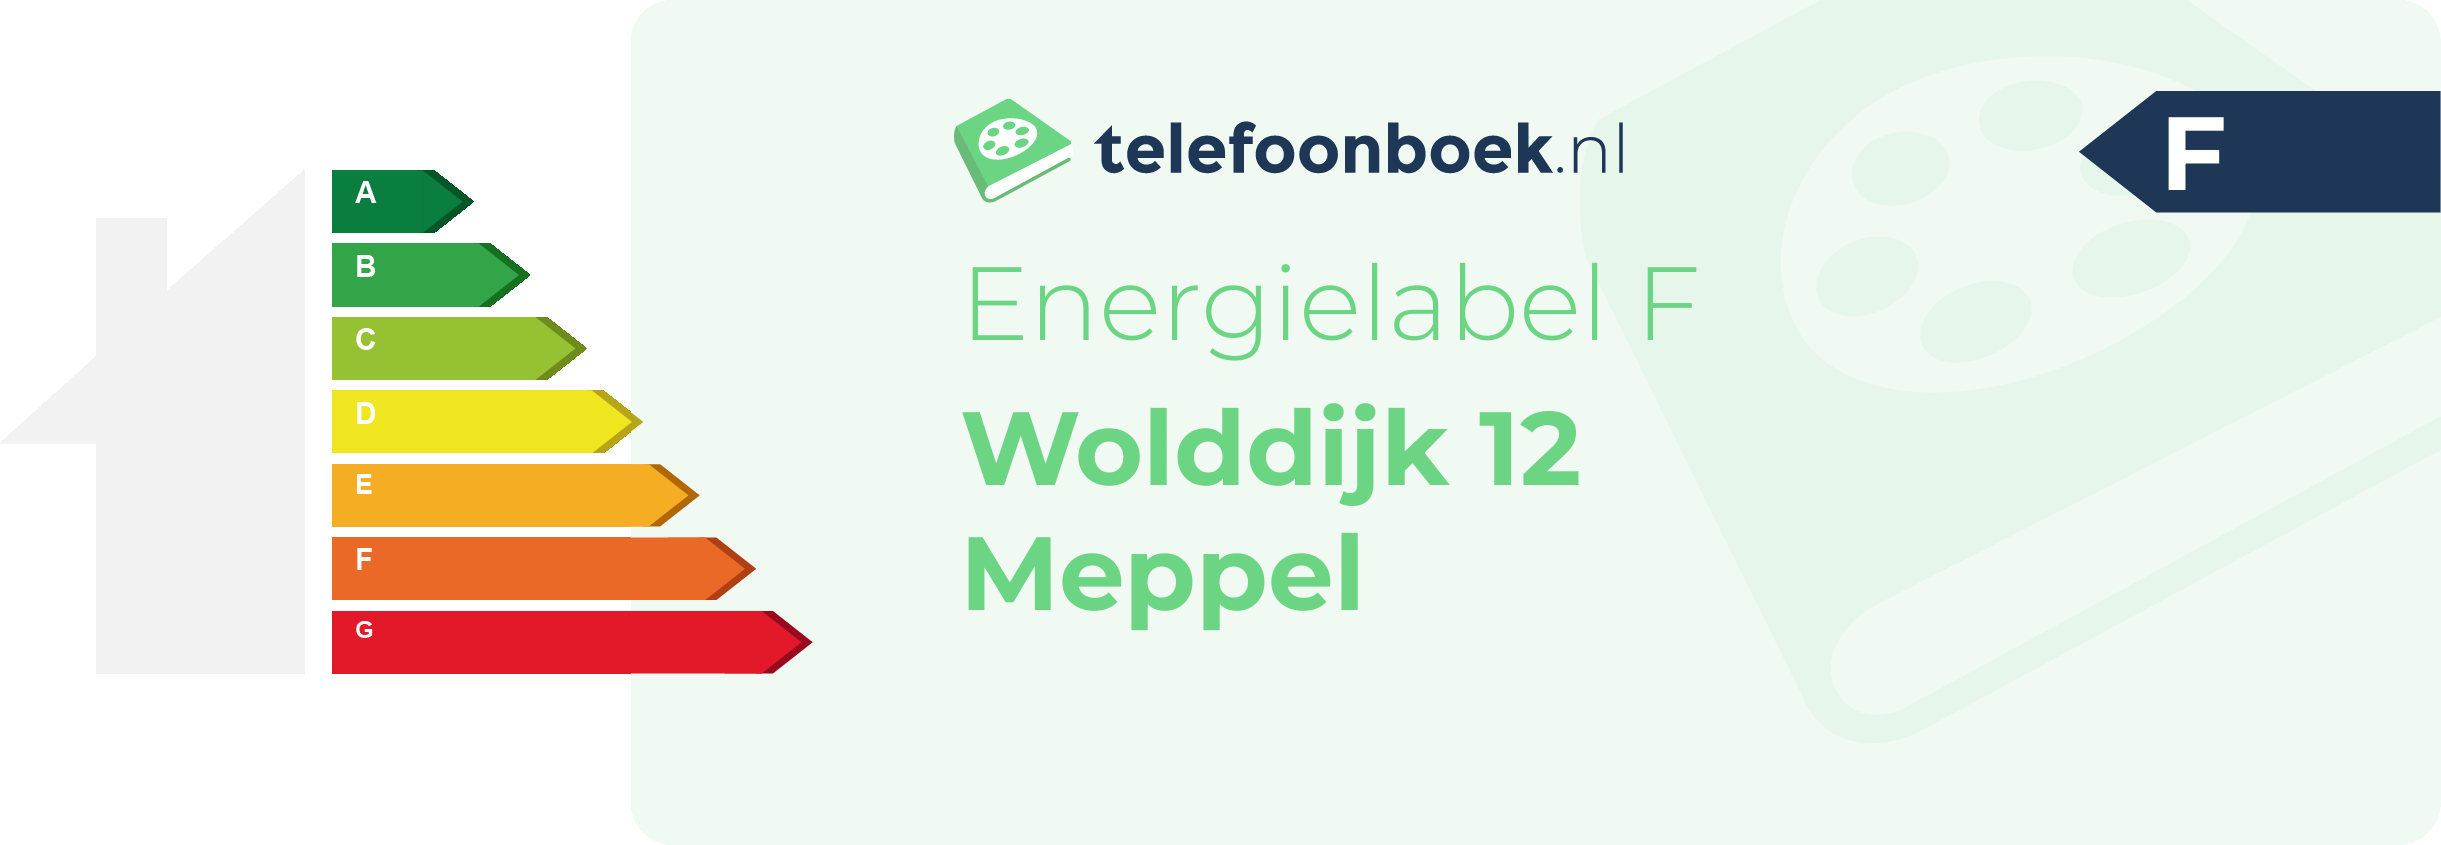 Energielabel Wolddijk 12 Meppel